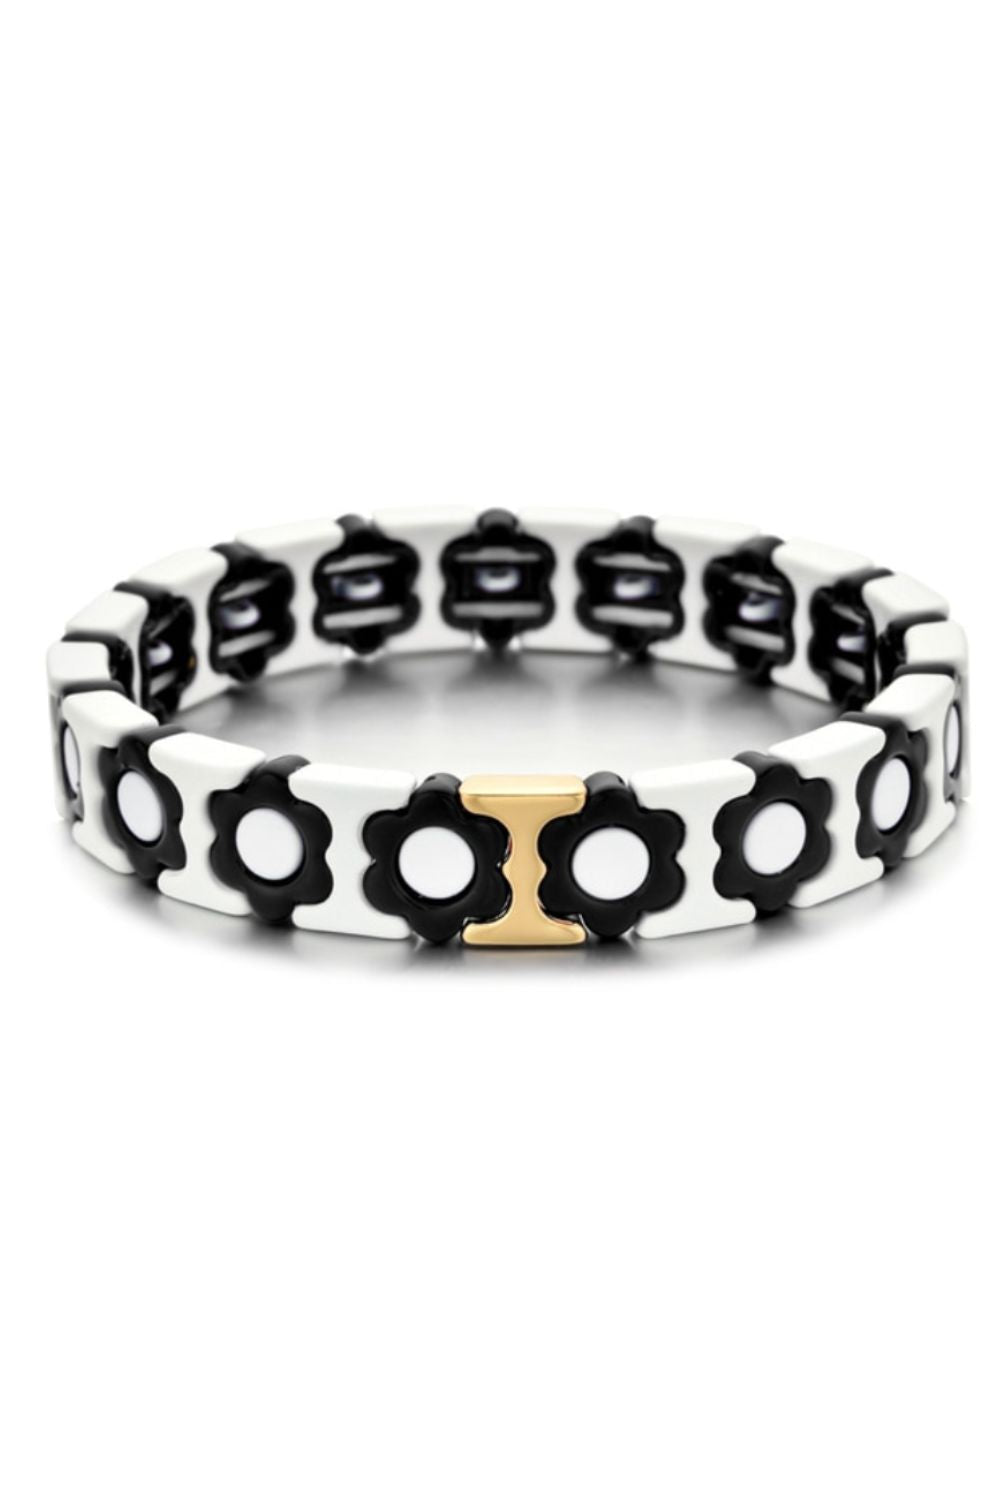 Daisy chain bracelet - black/white/gold